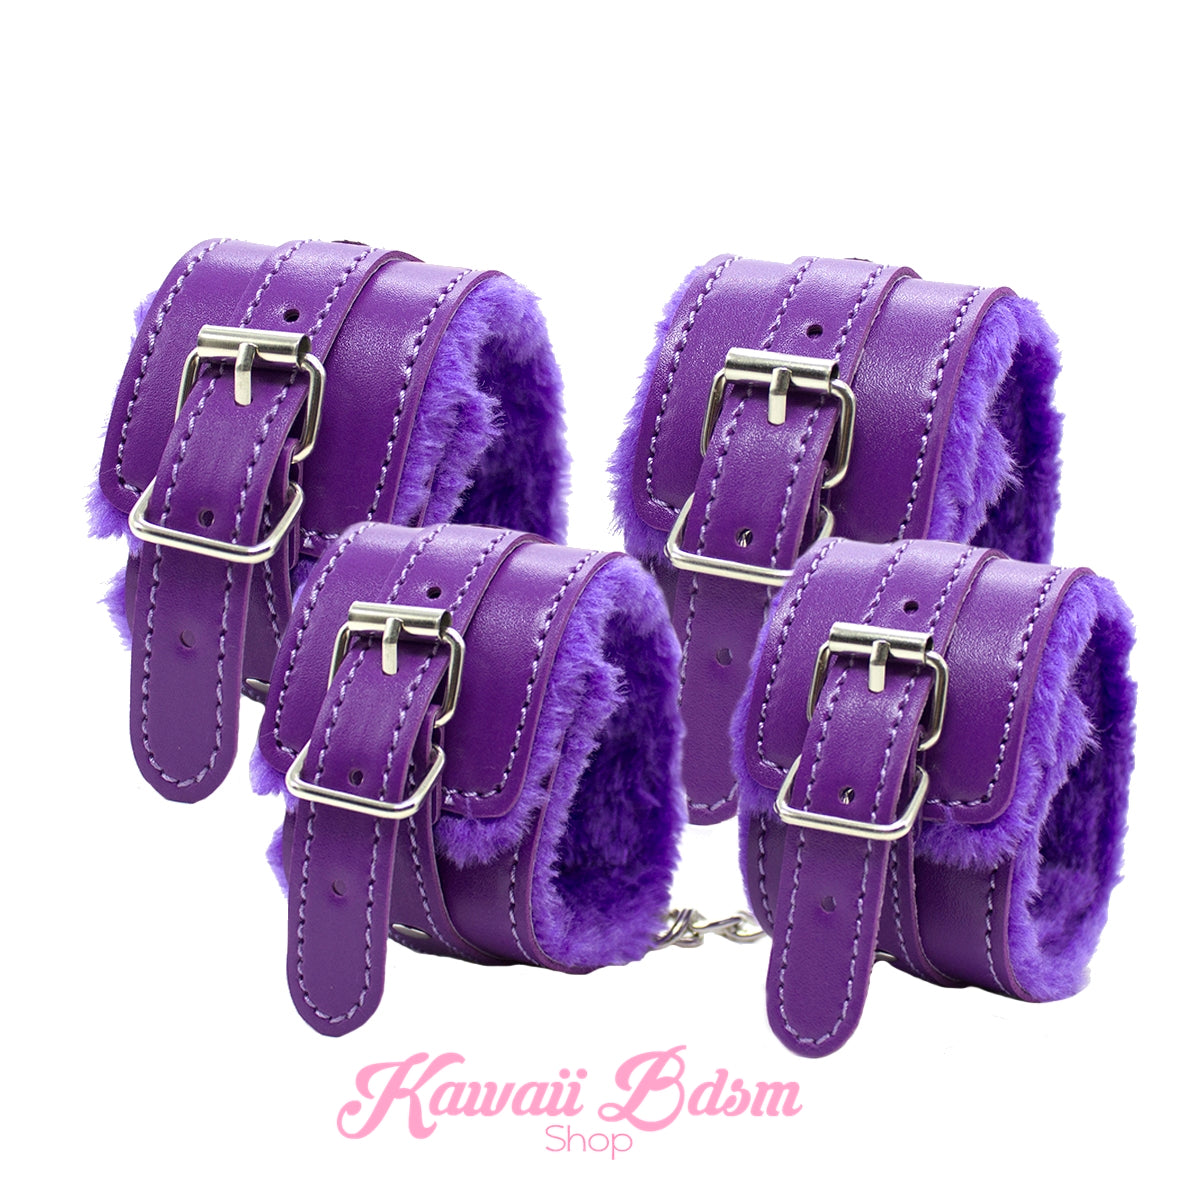 Purple & Black Premium 8 Pcs Bondage Kit – Kawaii Bdsm